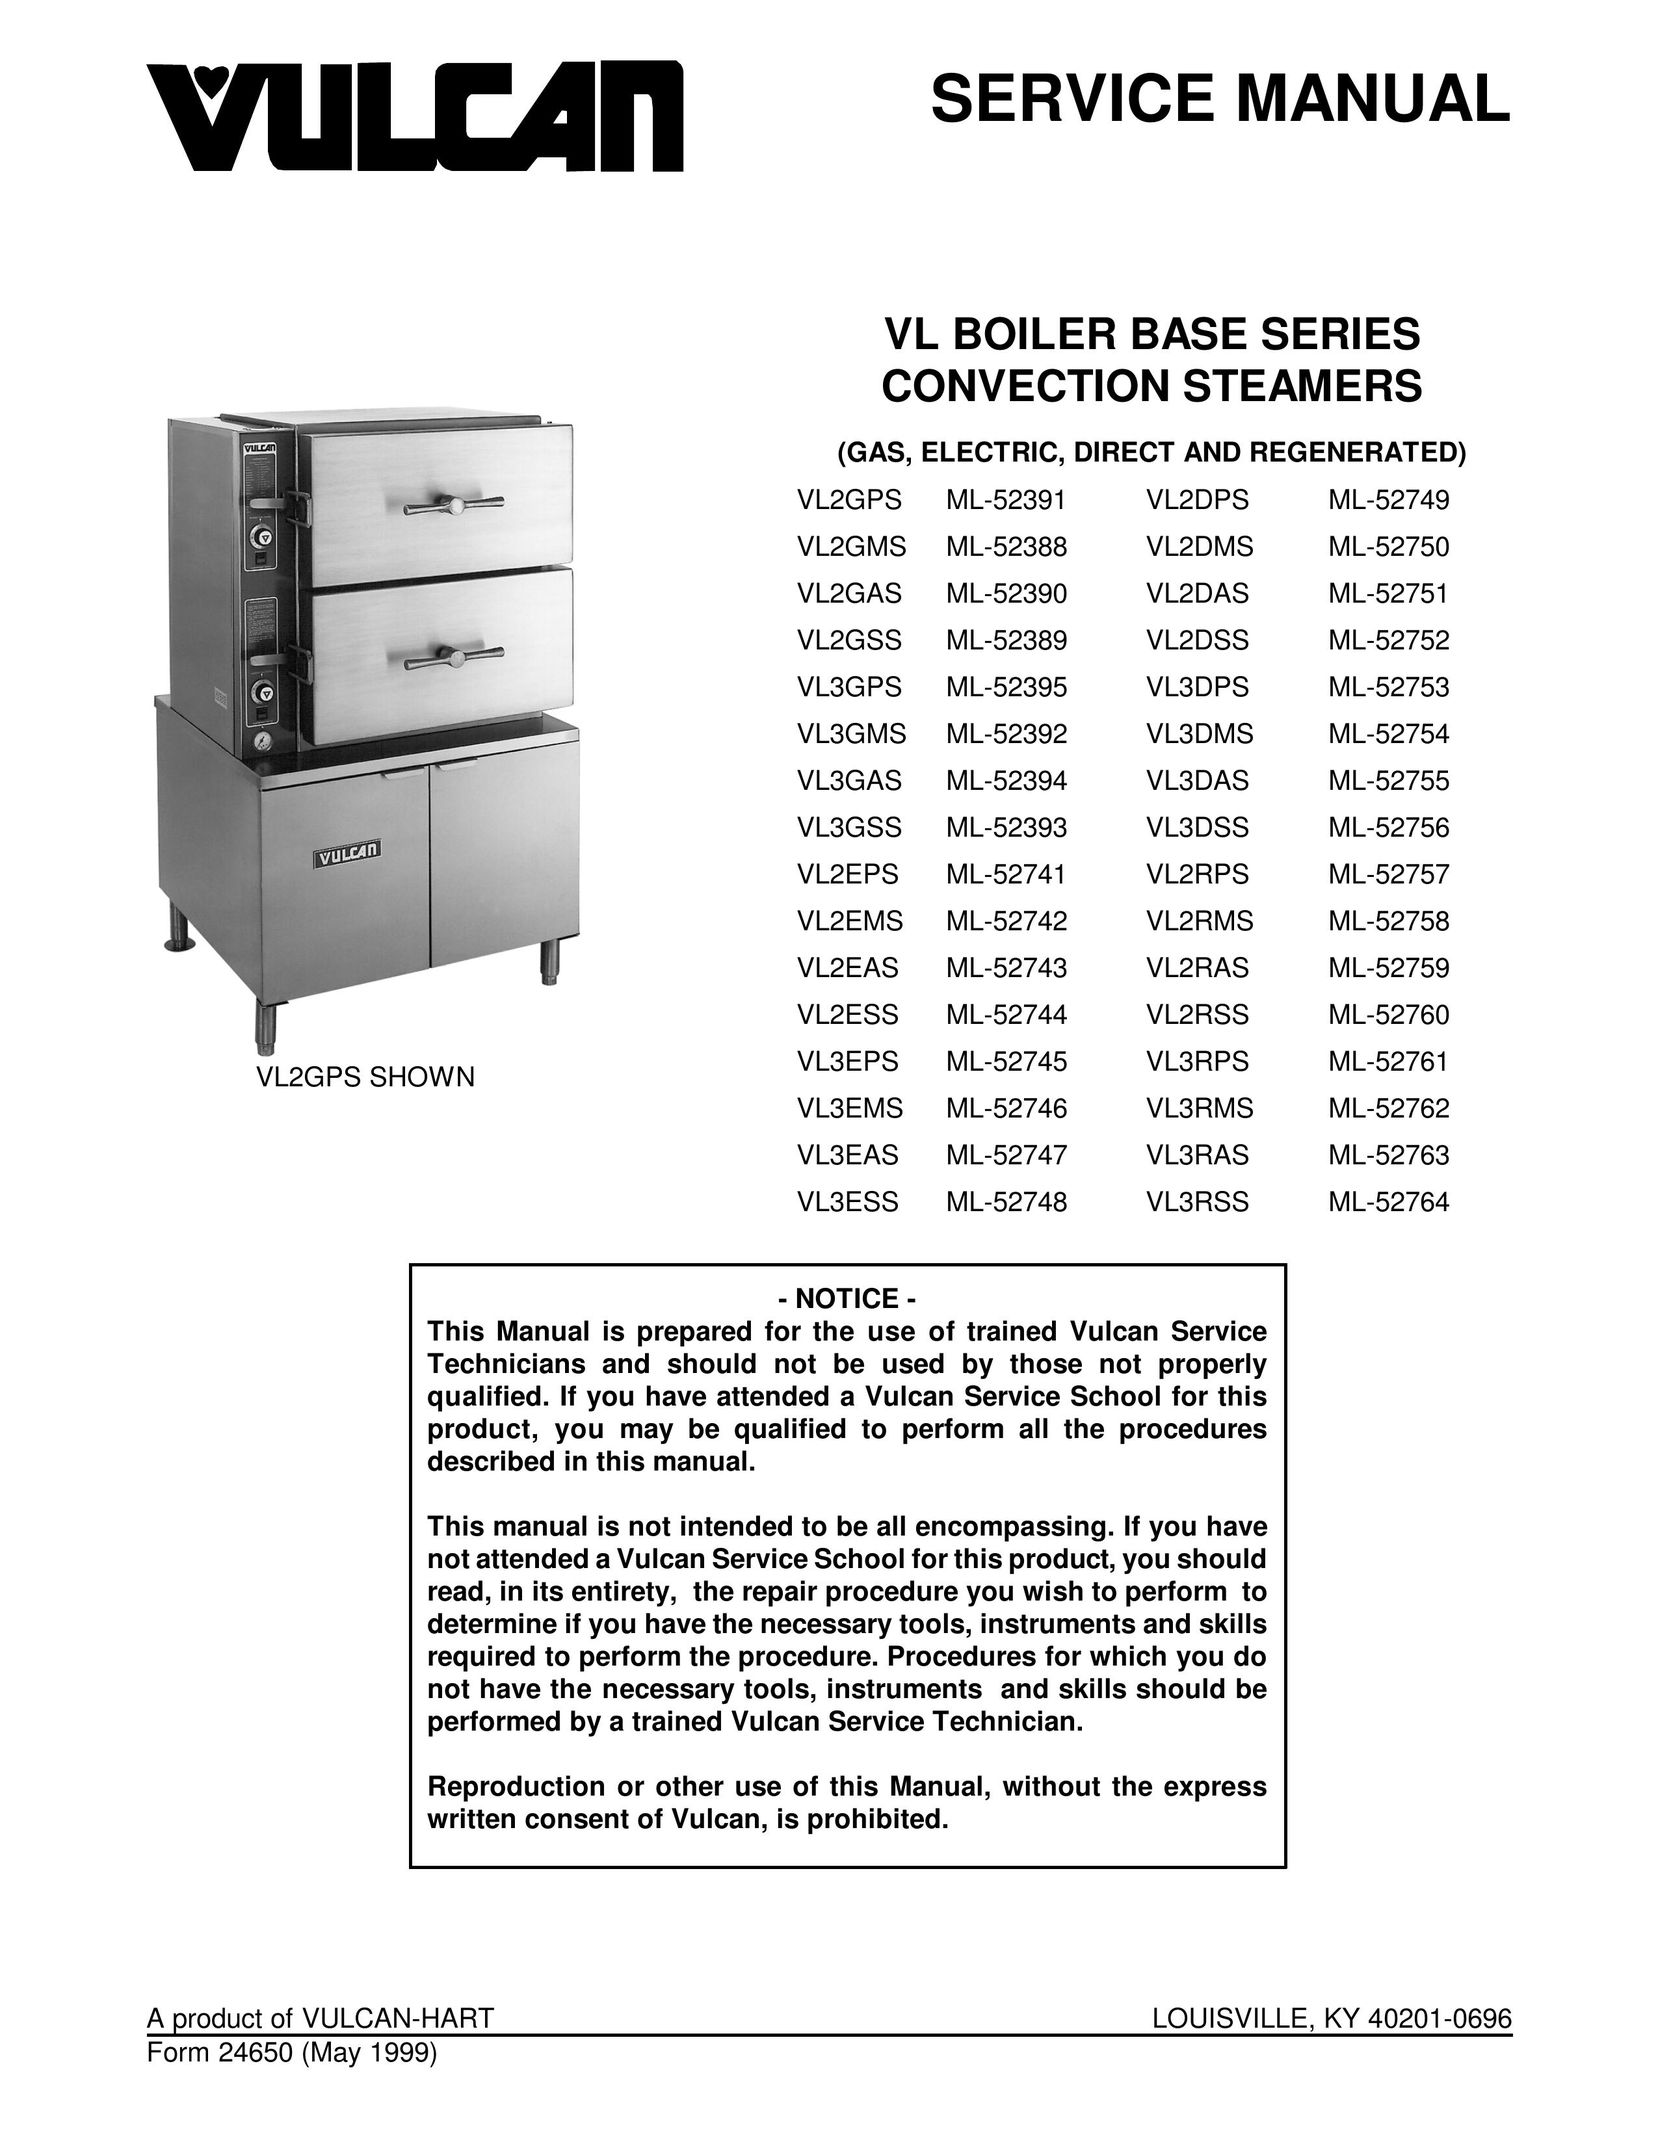 Vulcan-Hart VL3GPS Boiler User Manual